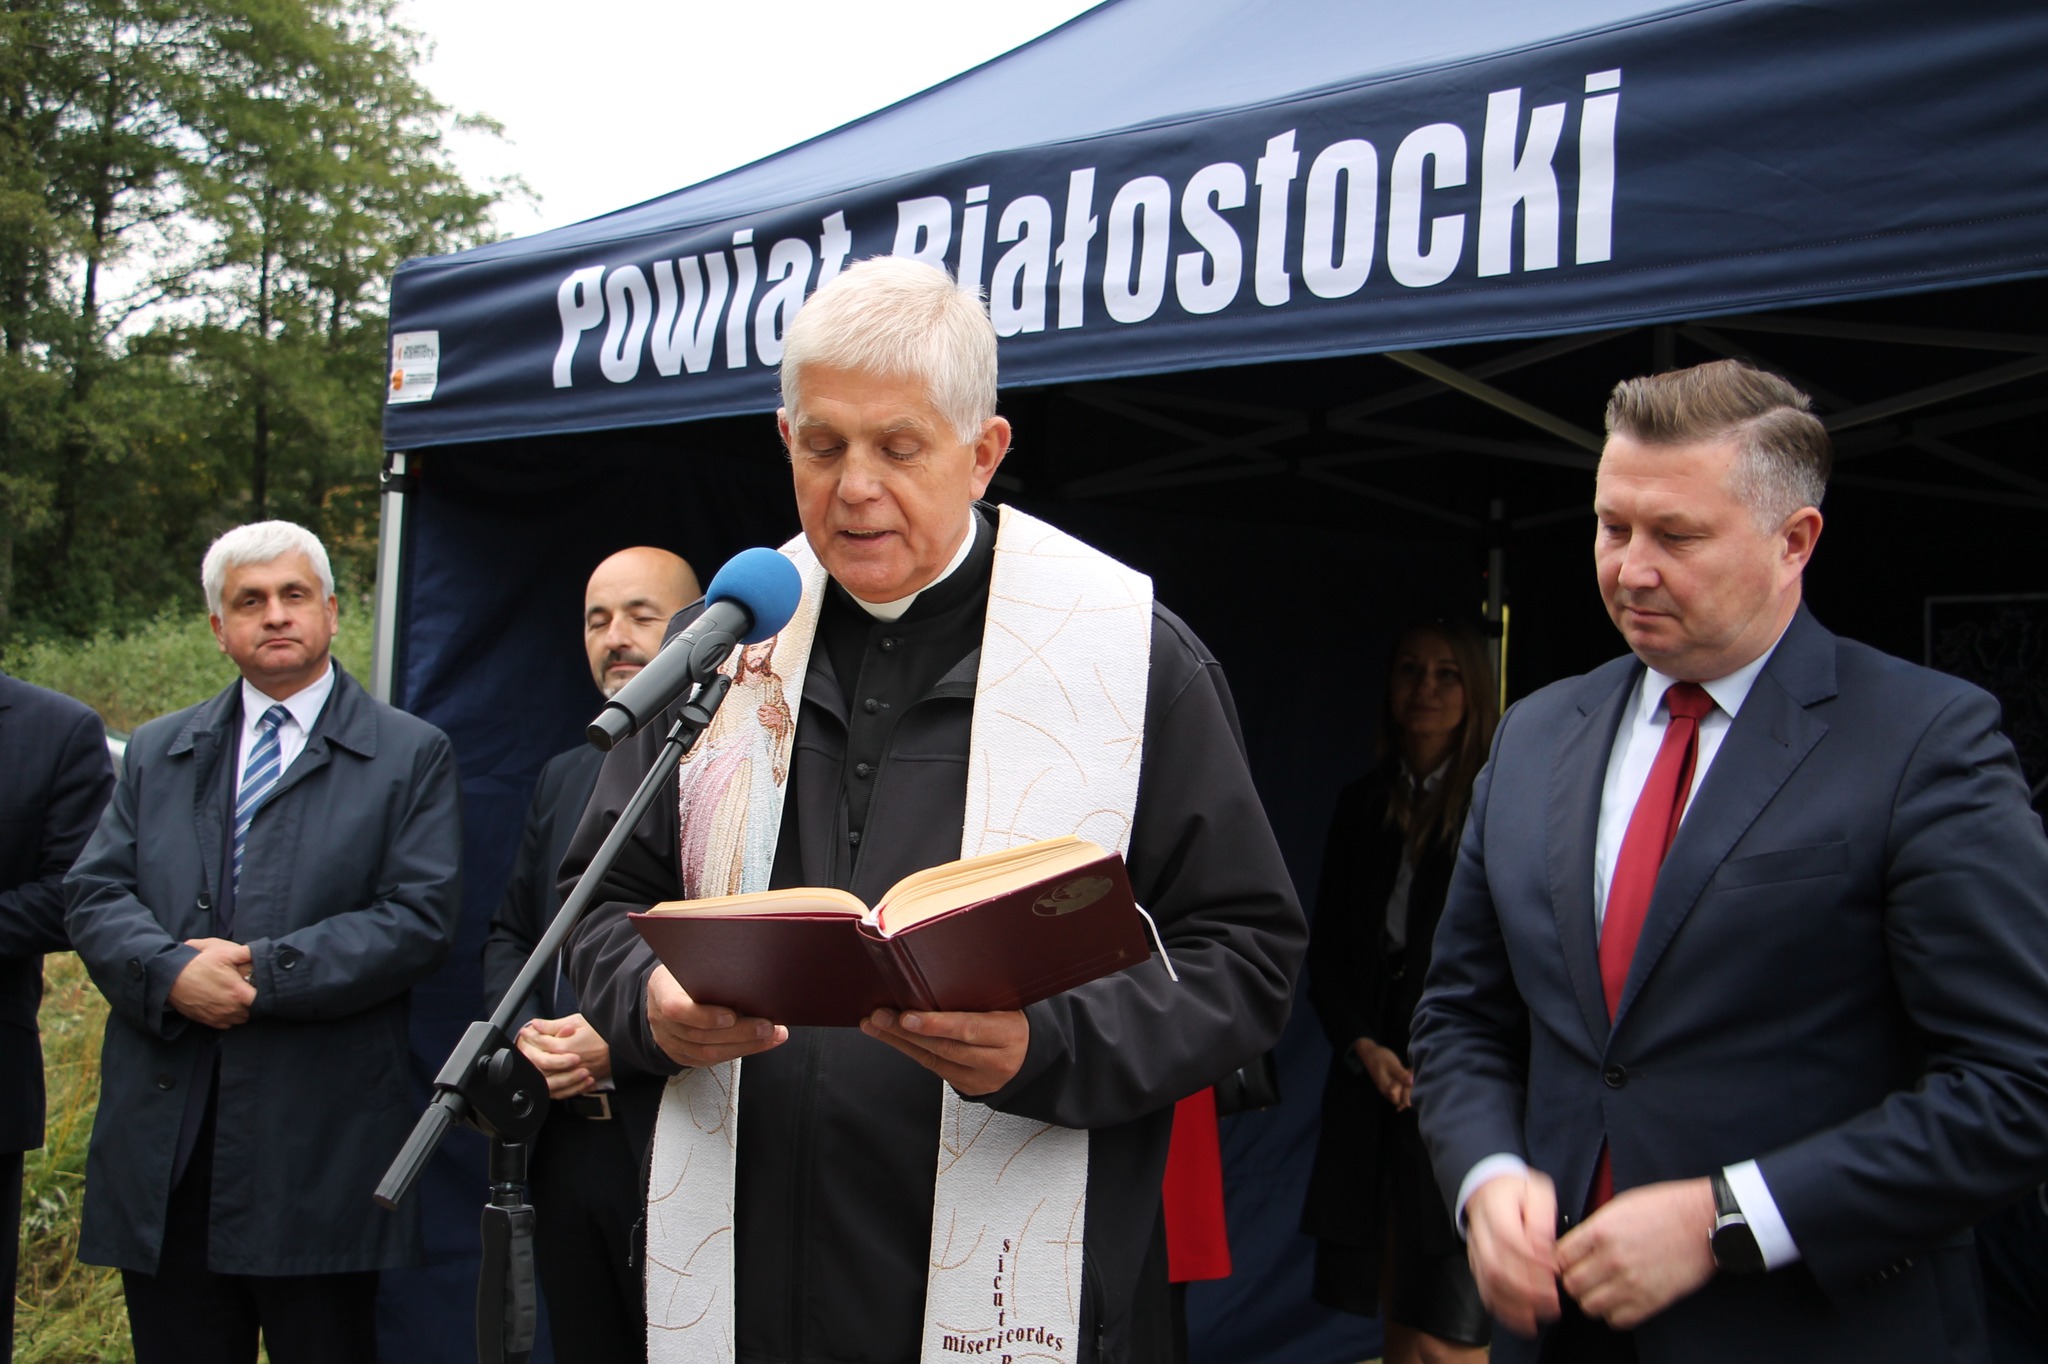 Modlitwa za pomyślność wszystkich korzystających z drogi - proboszcz parafii w Choroszczy
